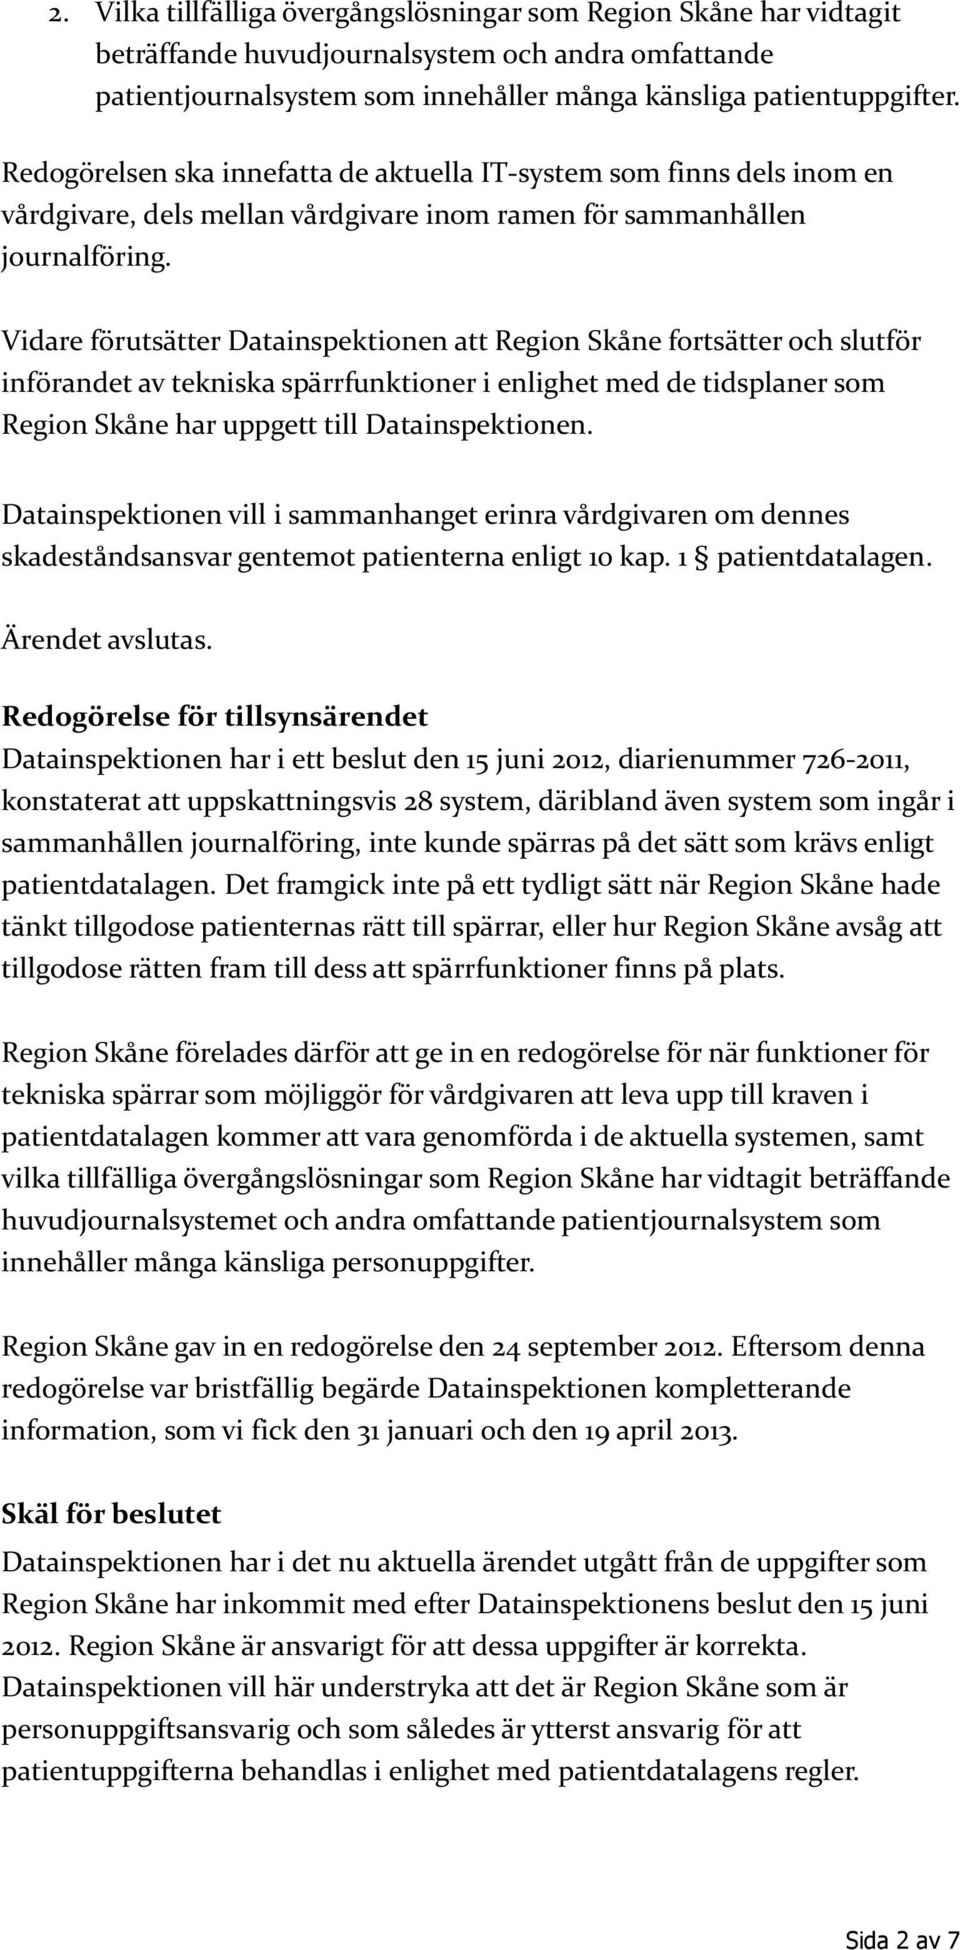 Vidare förutsätter Datainspektionen att Region Skåne fortsätter och slutför införandet av tekniska spärrfunktioner i enlighet med de tidsplaner som Region Skåne har uppgett till Datainspektionen.